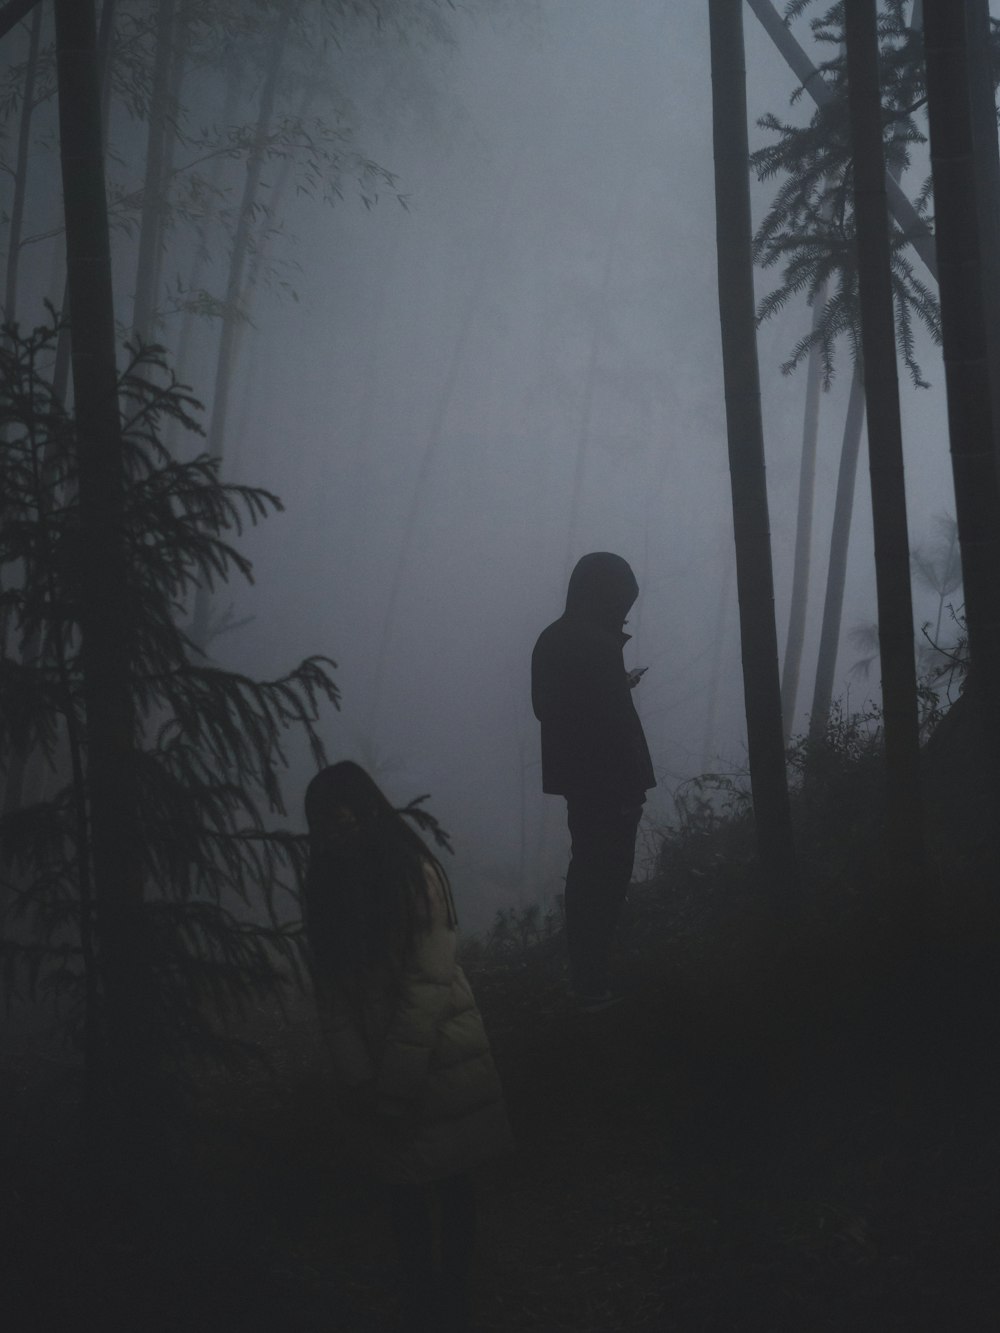 deux personnes dans la forêt avec un brouillard épais